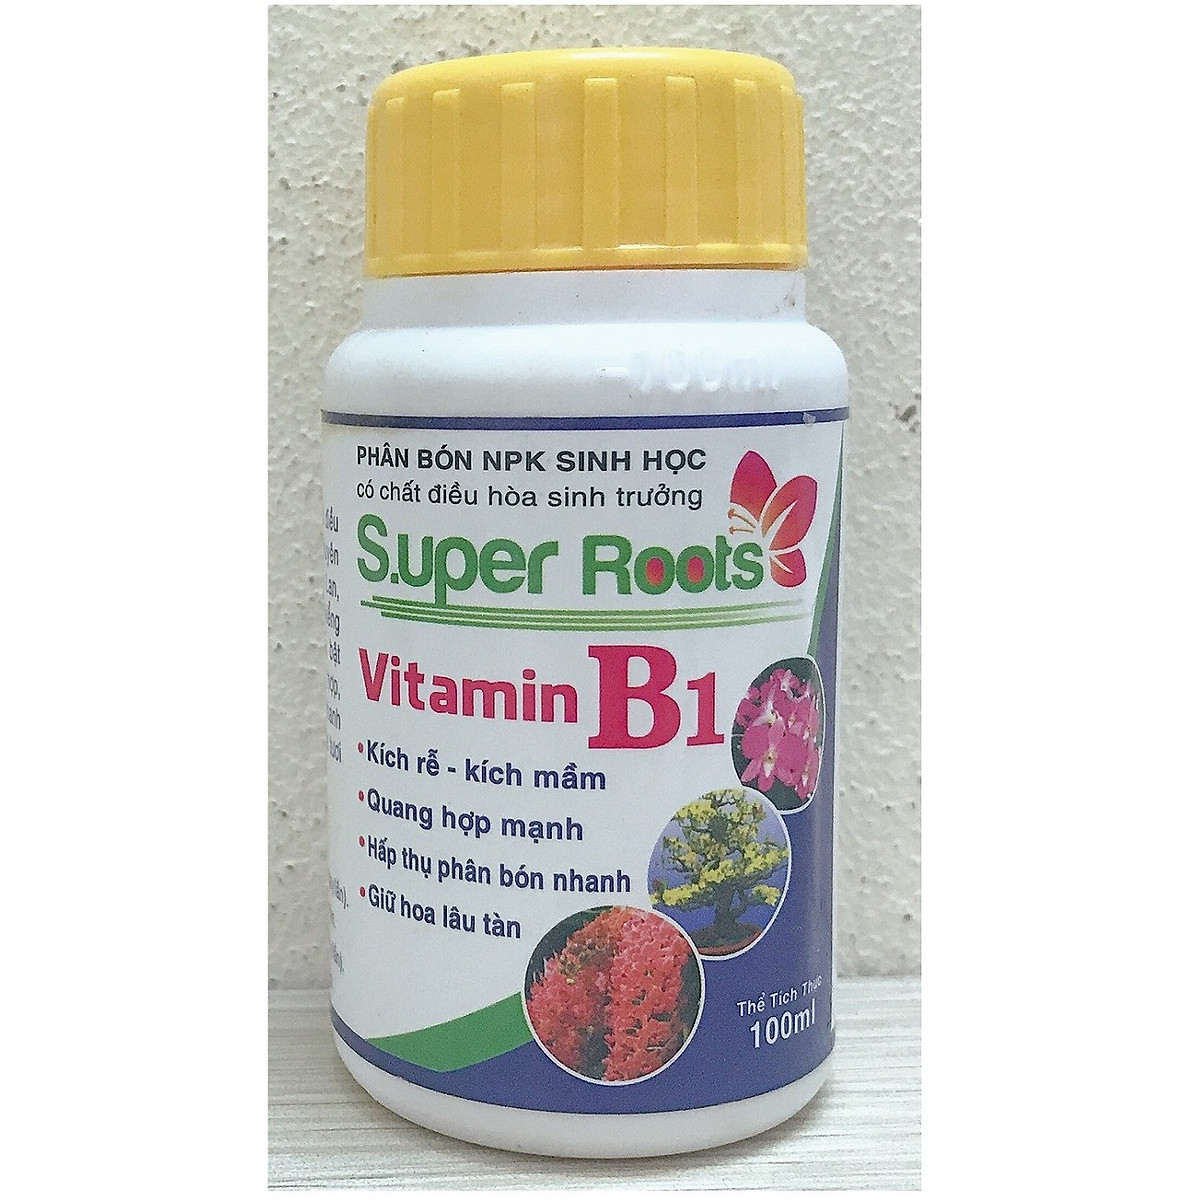 Vitamin B1 Super Roots ảnh 1